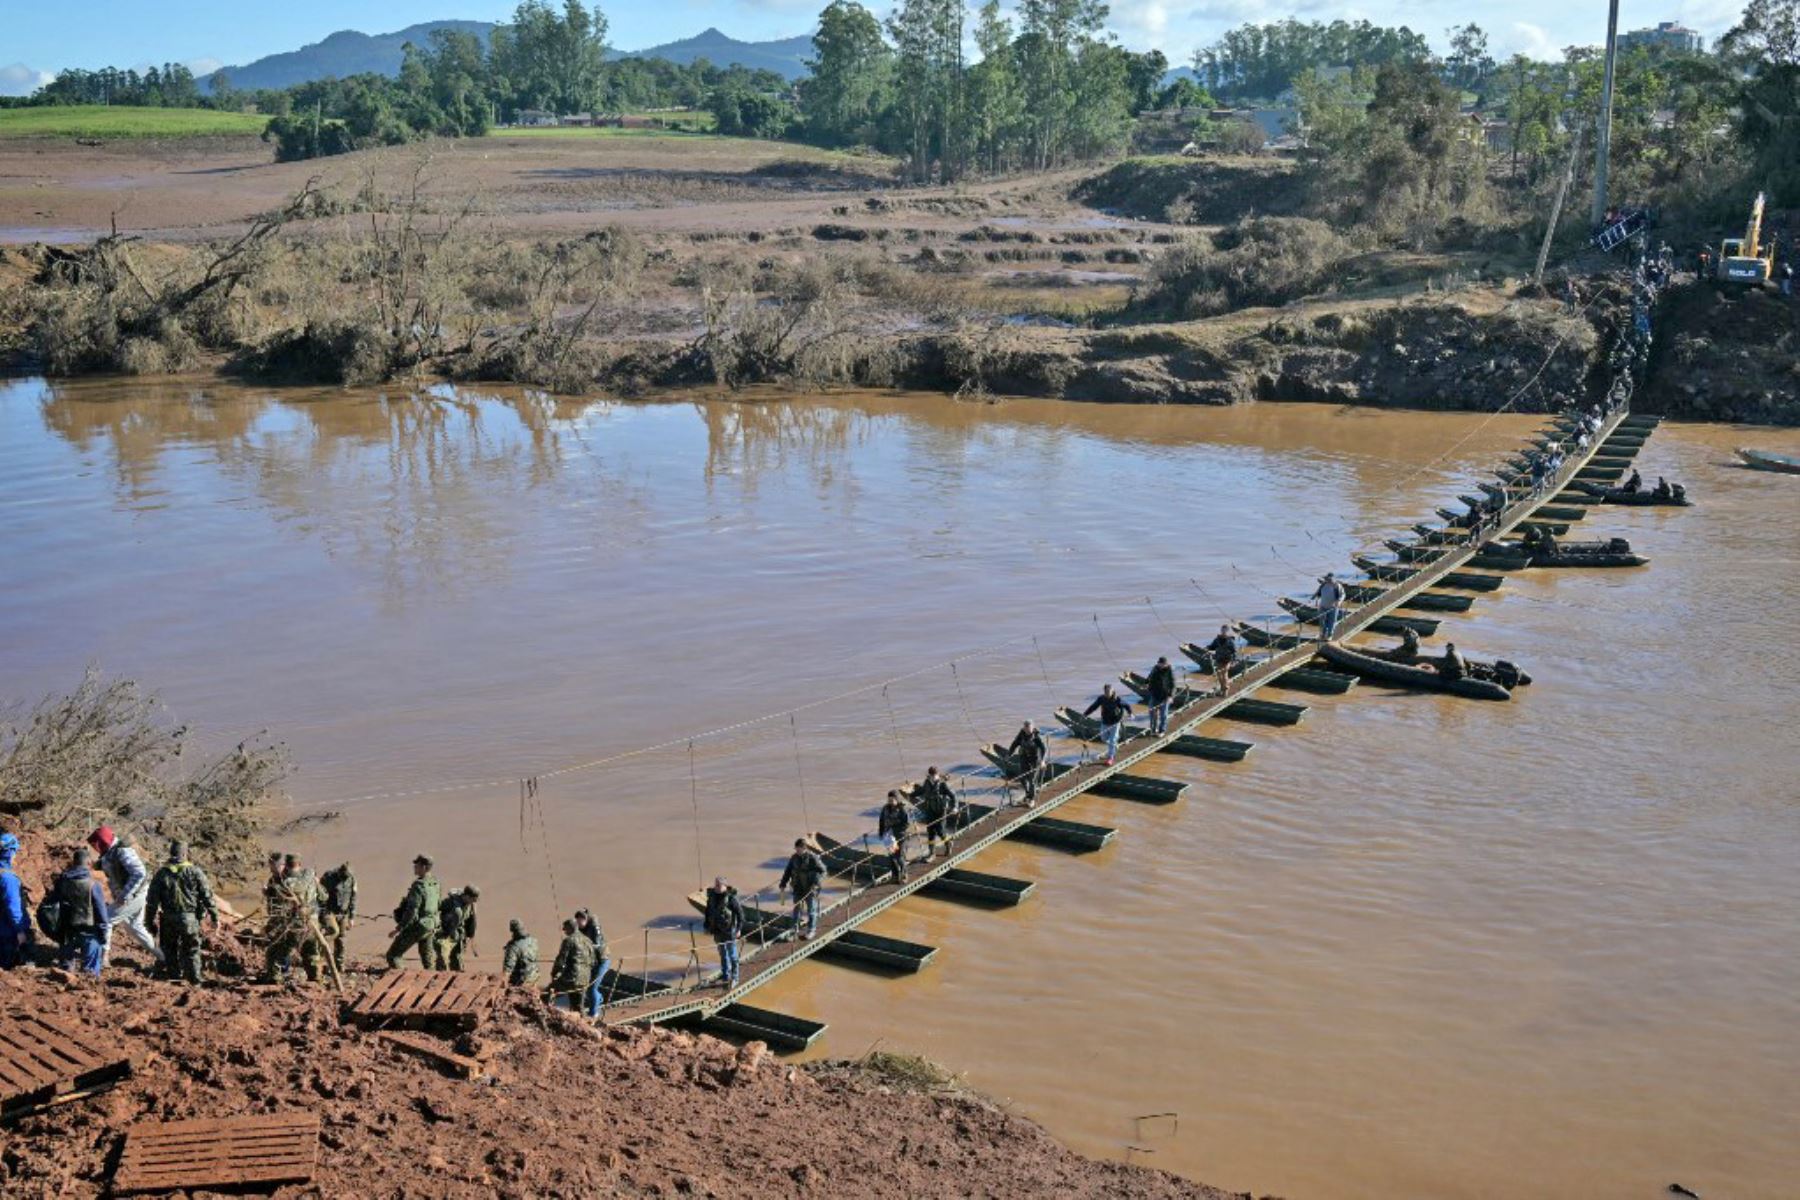 La gente camina en el paso de peatones de Arroio do Meio a Lajeado, sobre el río Forquilha, desde que el puente se cayó durante las recientes inundaciones, en el estado de Rio Grande do Sul, Brasil. Foto: AFP